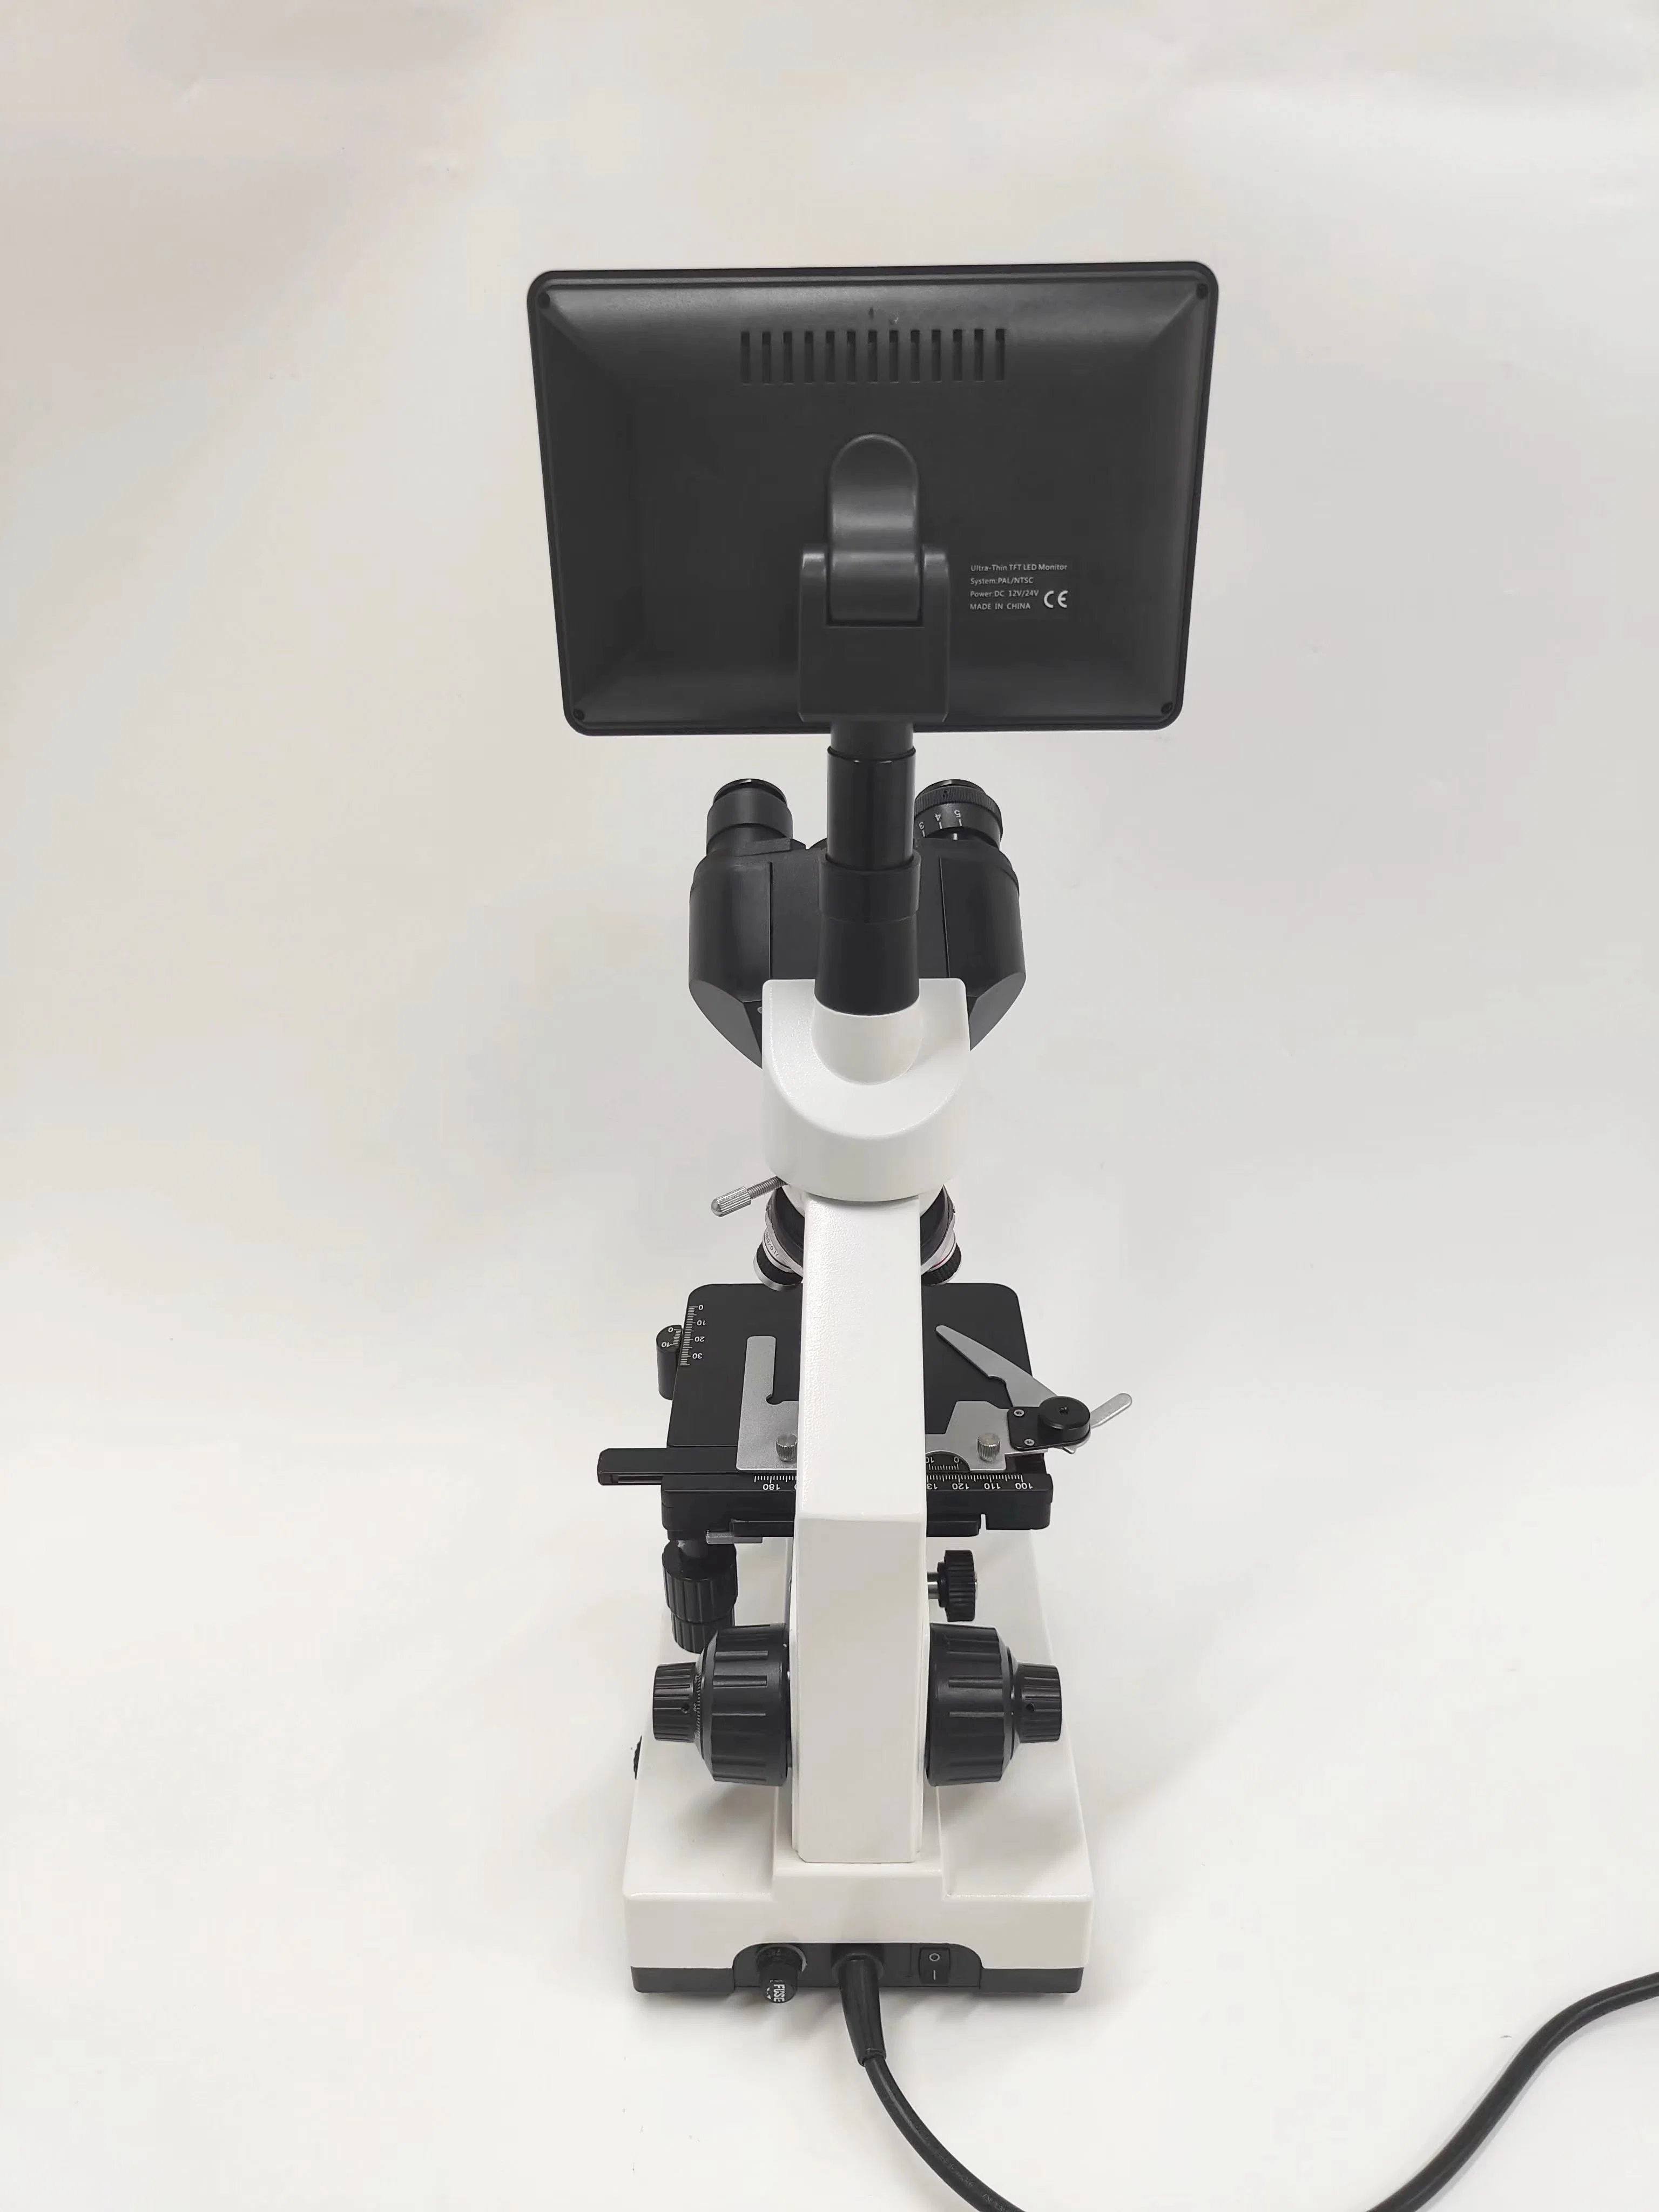 Xsp-100sm Professional pantalla trinocular microscopio digital de vídeo médico para laboratorio Clínica del Hospital